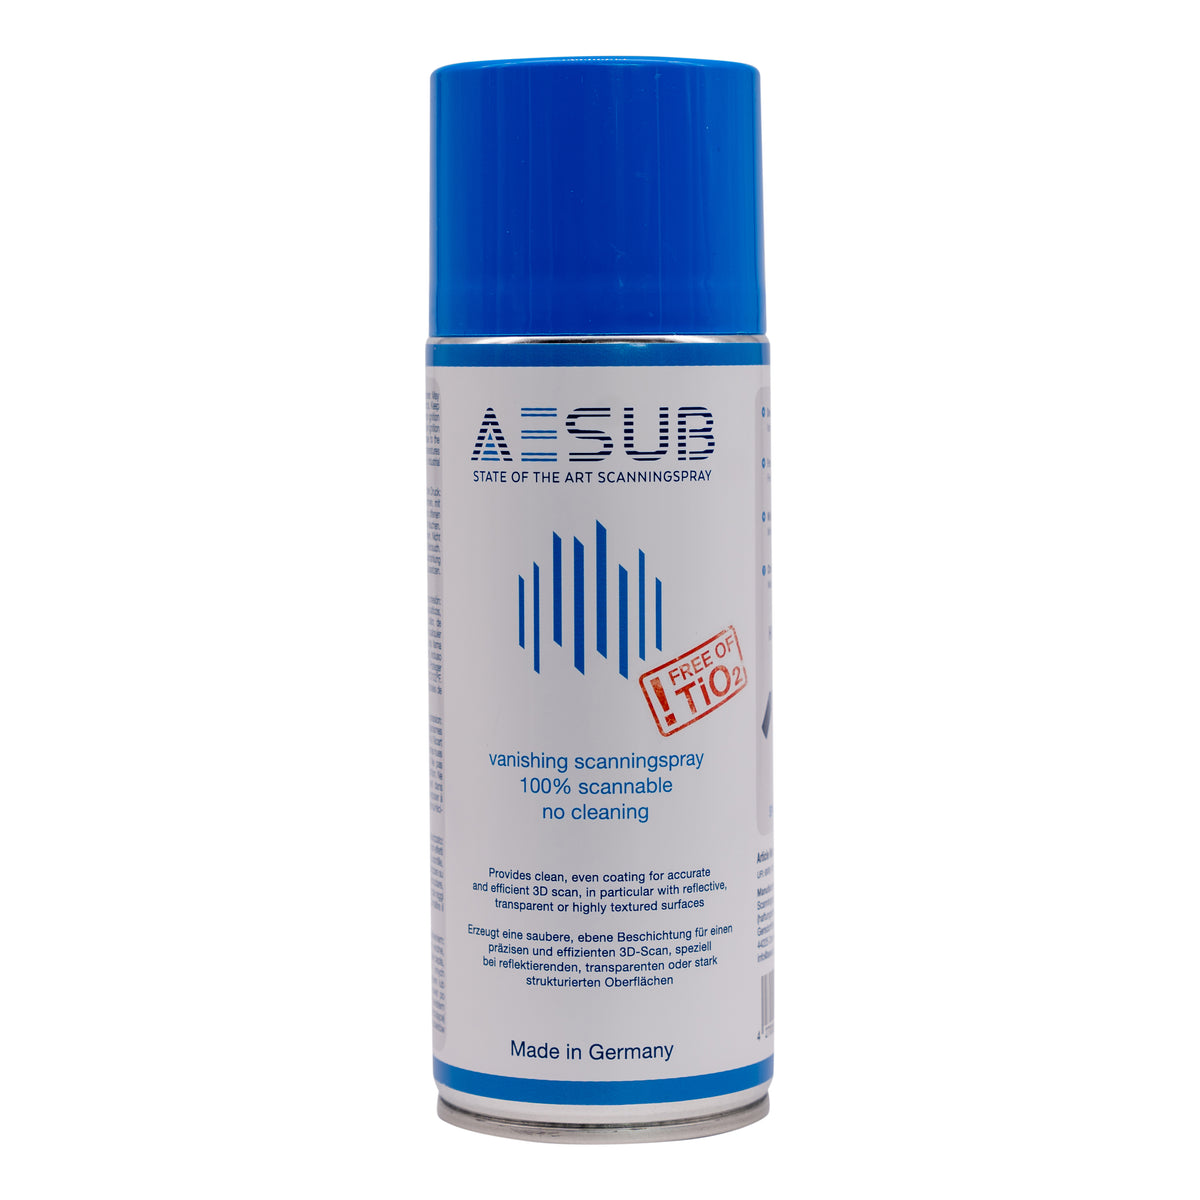 AESUB Blue Scanning Spray - Unique